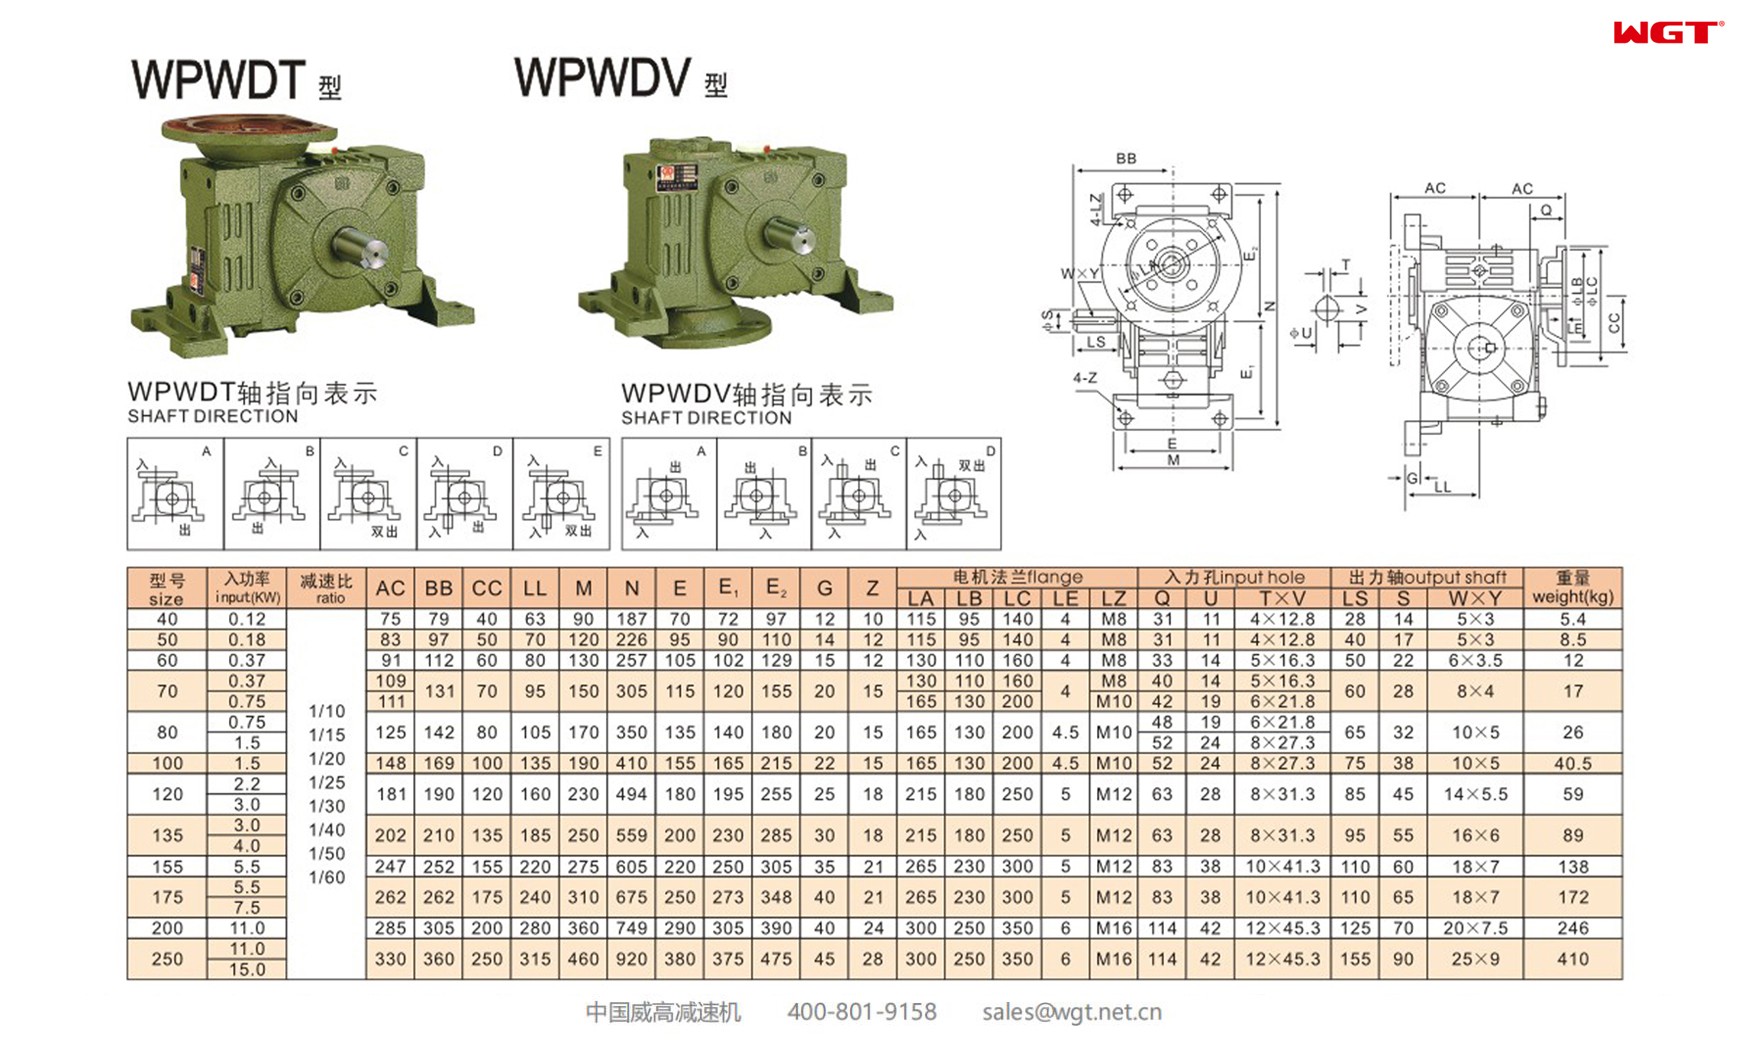 WPWDT155 worm gear reducer universal speed reducer